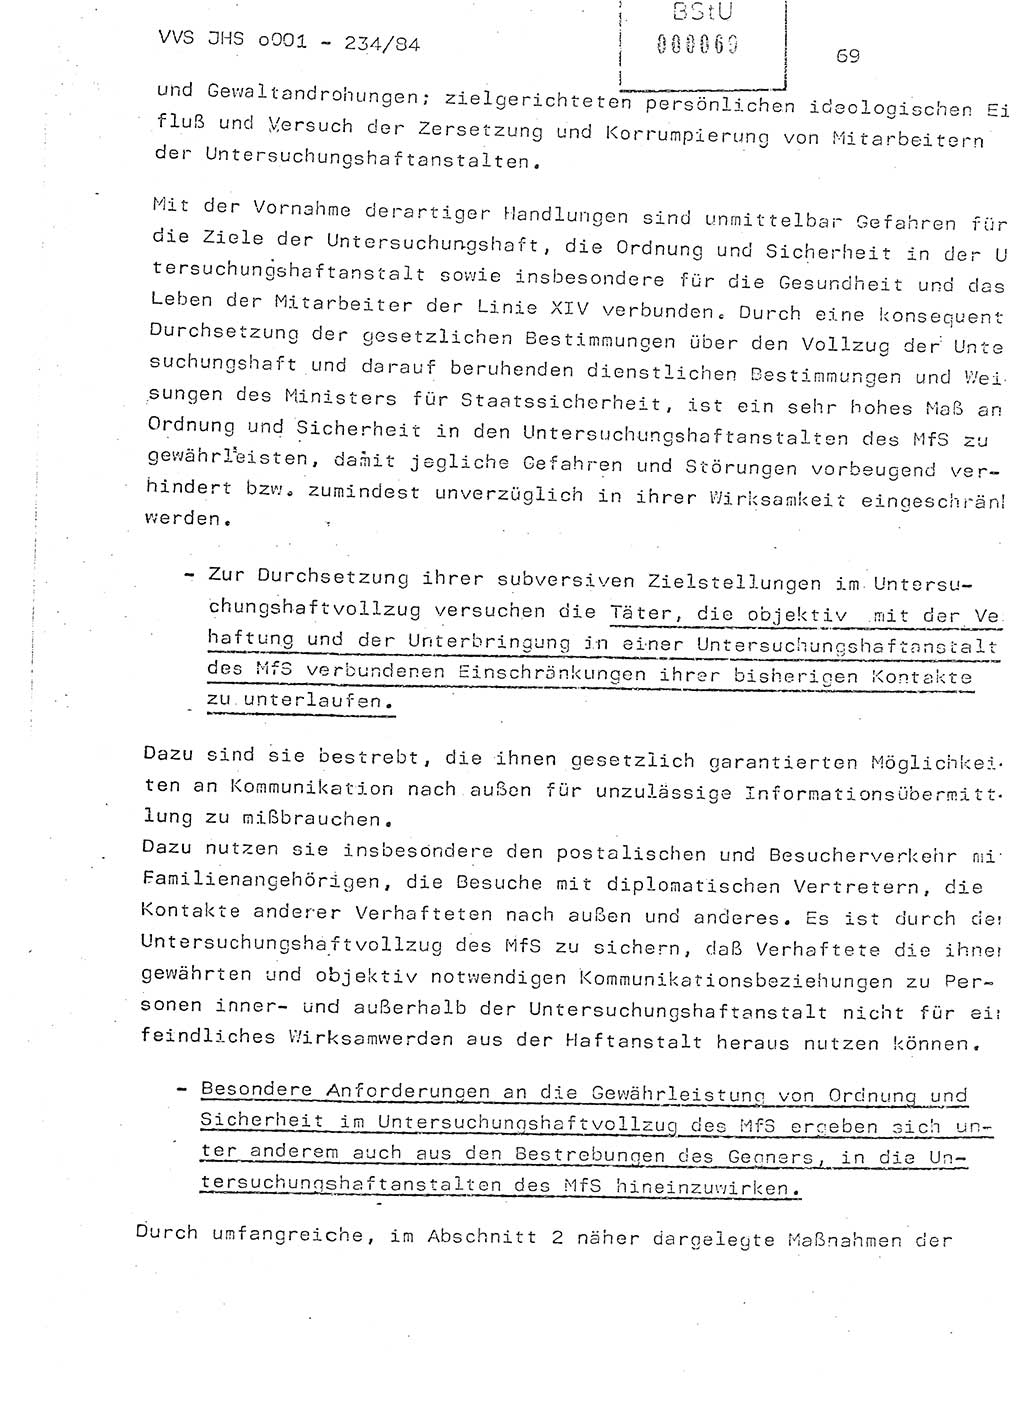 Dissertation Oberst Siegfried Rataizick (Abt. ⅩⅣ), Oberstleutnant Volkmar Heinz (Abt. ⅩⅣ), Oberstleutnant Werner Stein (HA Ⅸ), Hauptmann Heinz Conrad (JHS), Ministerium für Staatssicherheit (MfS) [Deutsche Demokratische Republik (DDR)], Juristische Hochschule (JHS), Vertrauliche Verschlußsache (VVS) o001-234/84, Potsdam 1984, Seite 69 (Diss. MfS DDR JHS VVS o001-234/84 1984, S. 69)